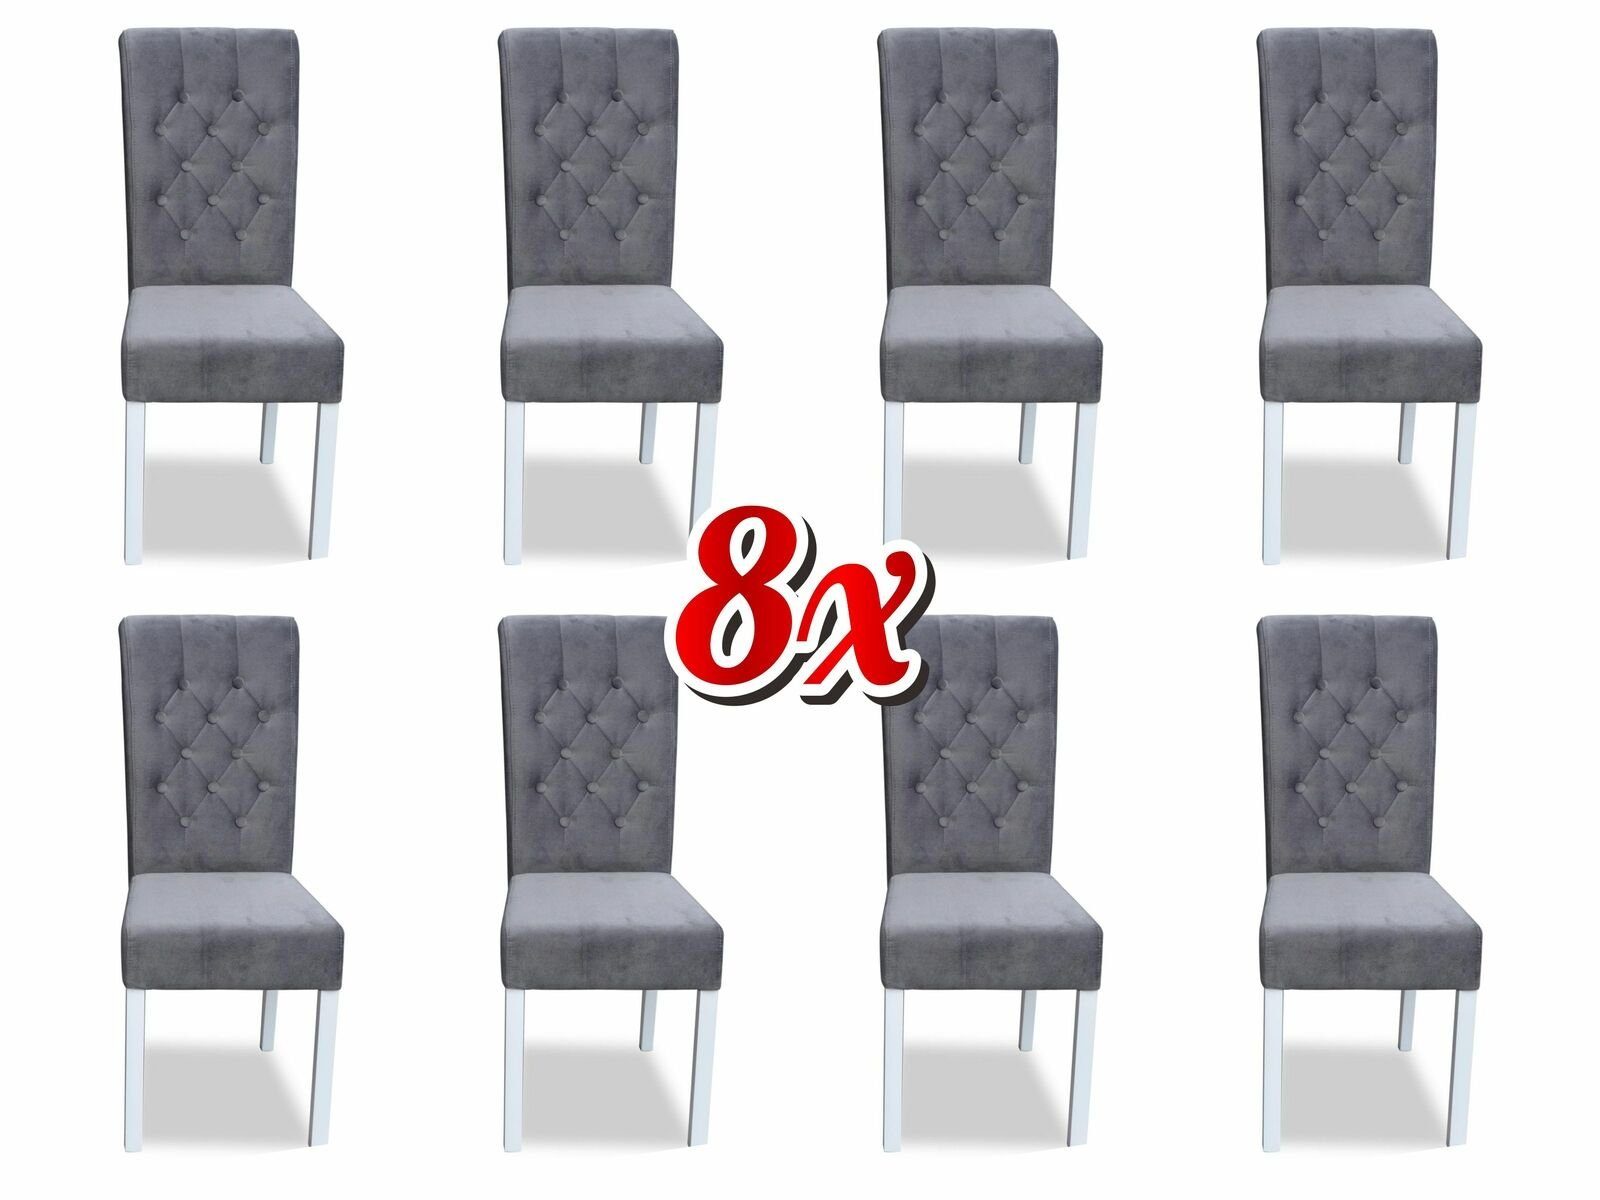 JVmoebel Stuhl, Chesterfield 8x Holz Stuhl Klassische Lehn Grau Textil Polster Sessel Stühle Design